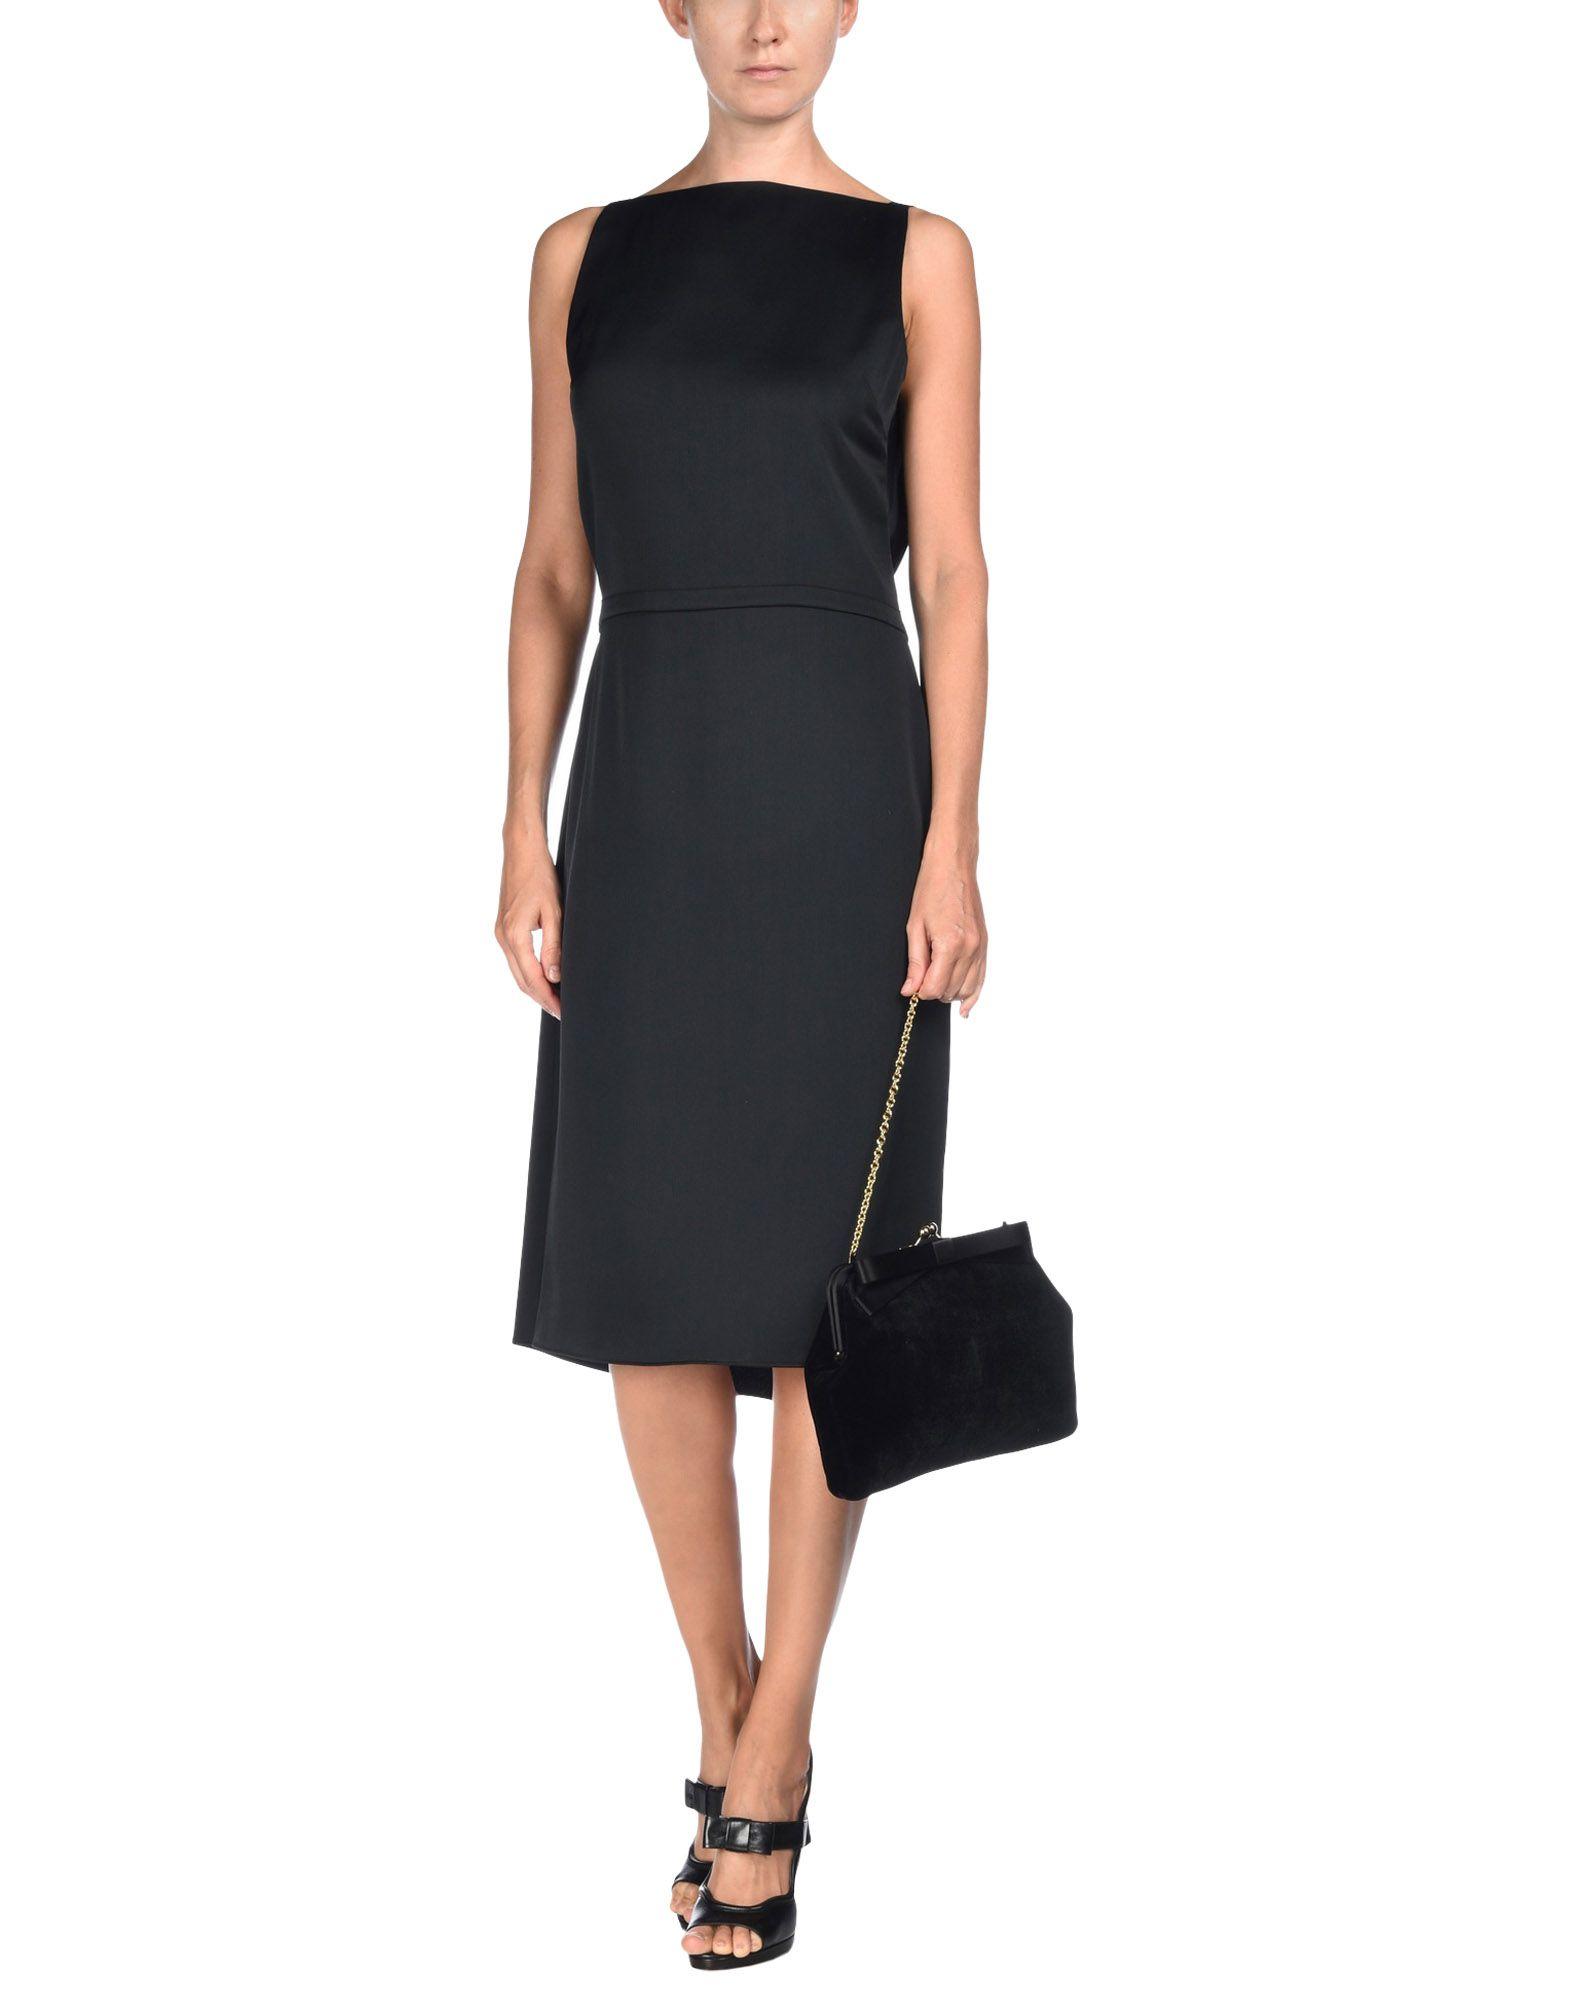 Maison margiela Knee-length Dress in Black | Lyst